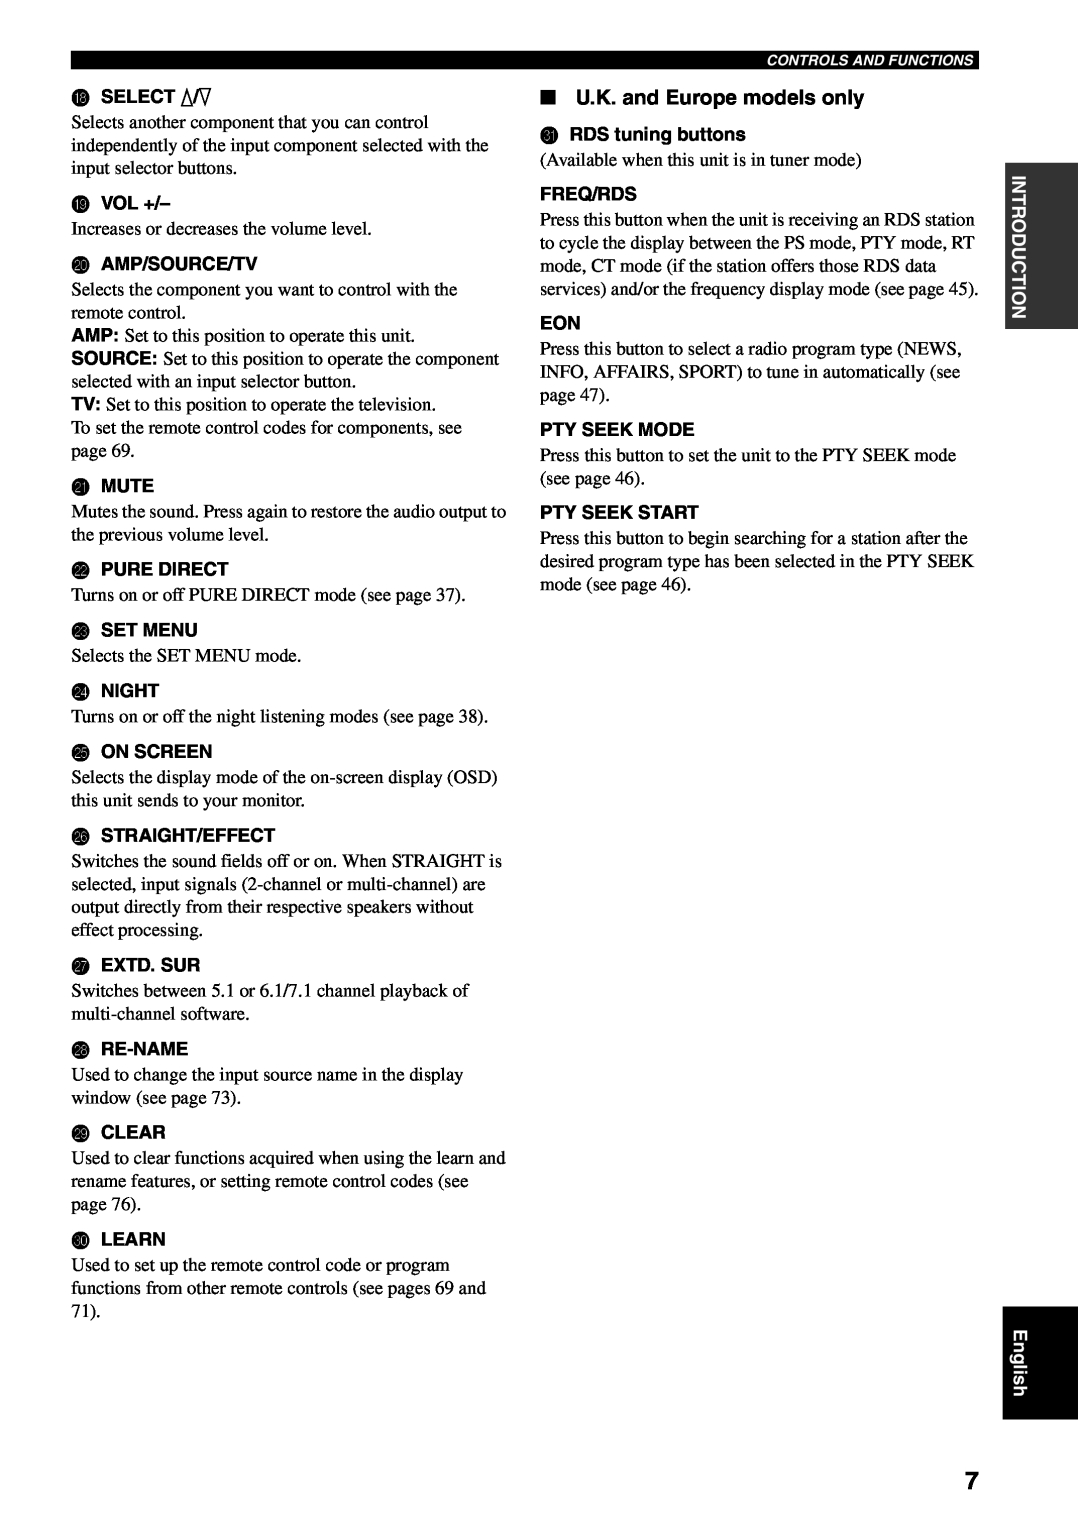 Yamaha RX-V1500 owner manual U.K. and Europe models only, HSELECT k/n 